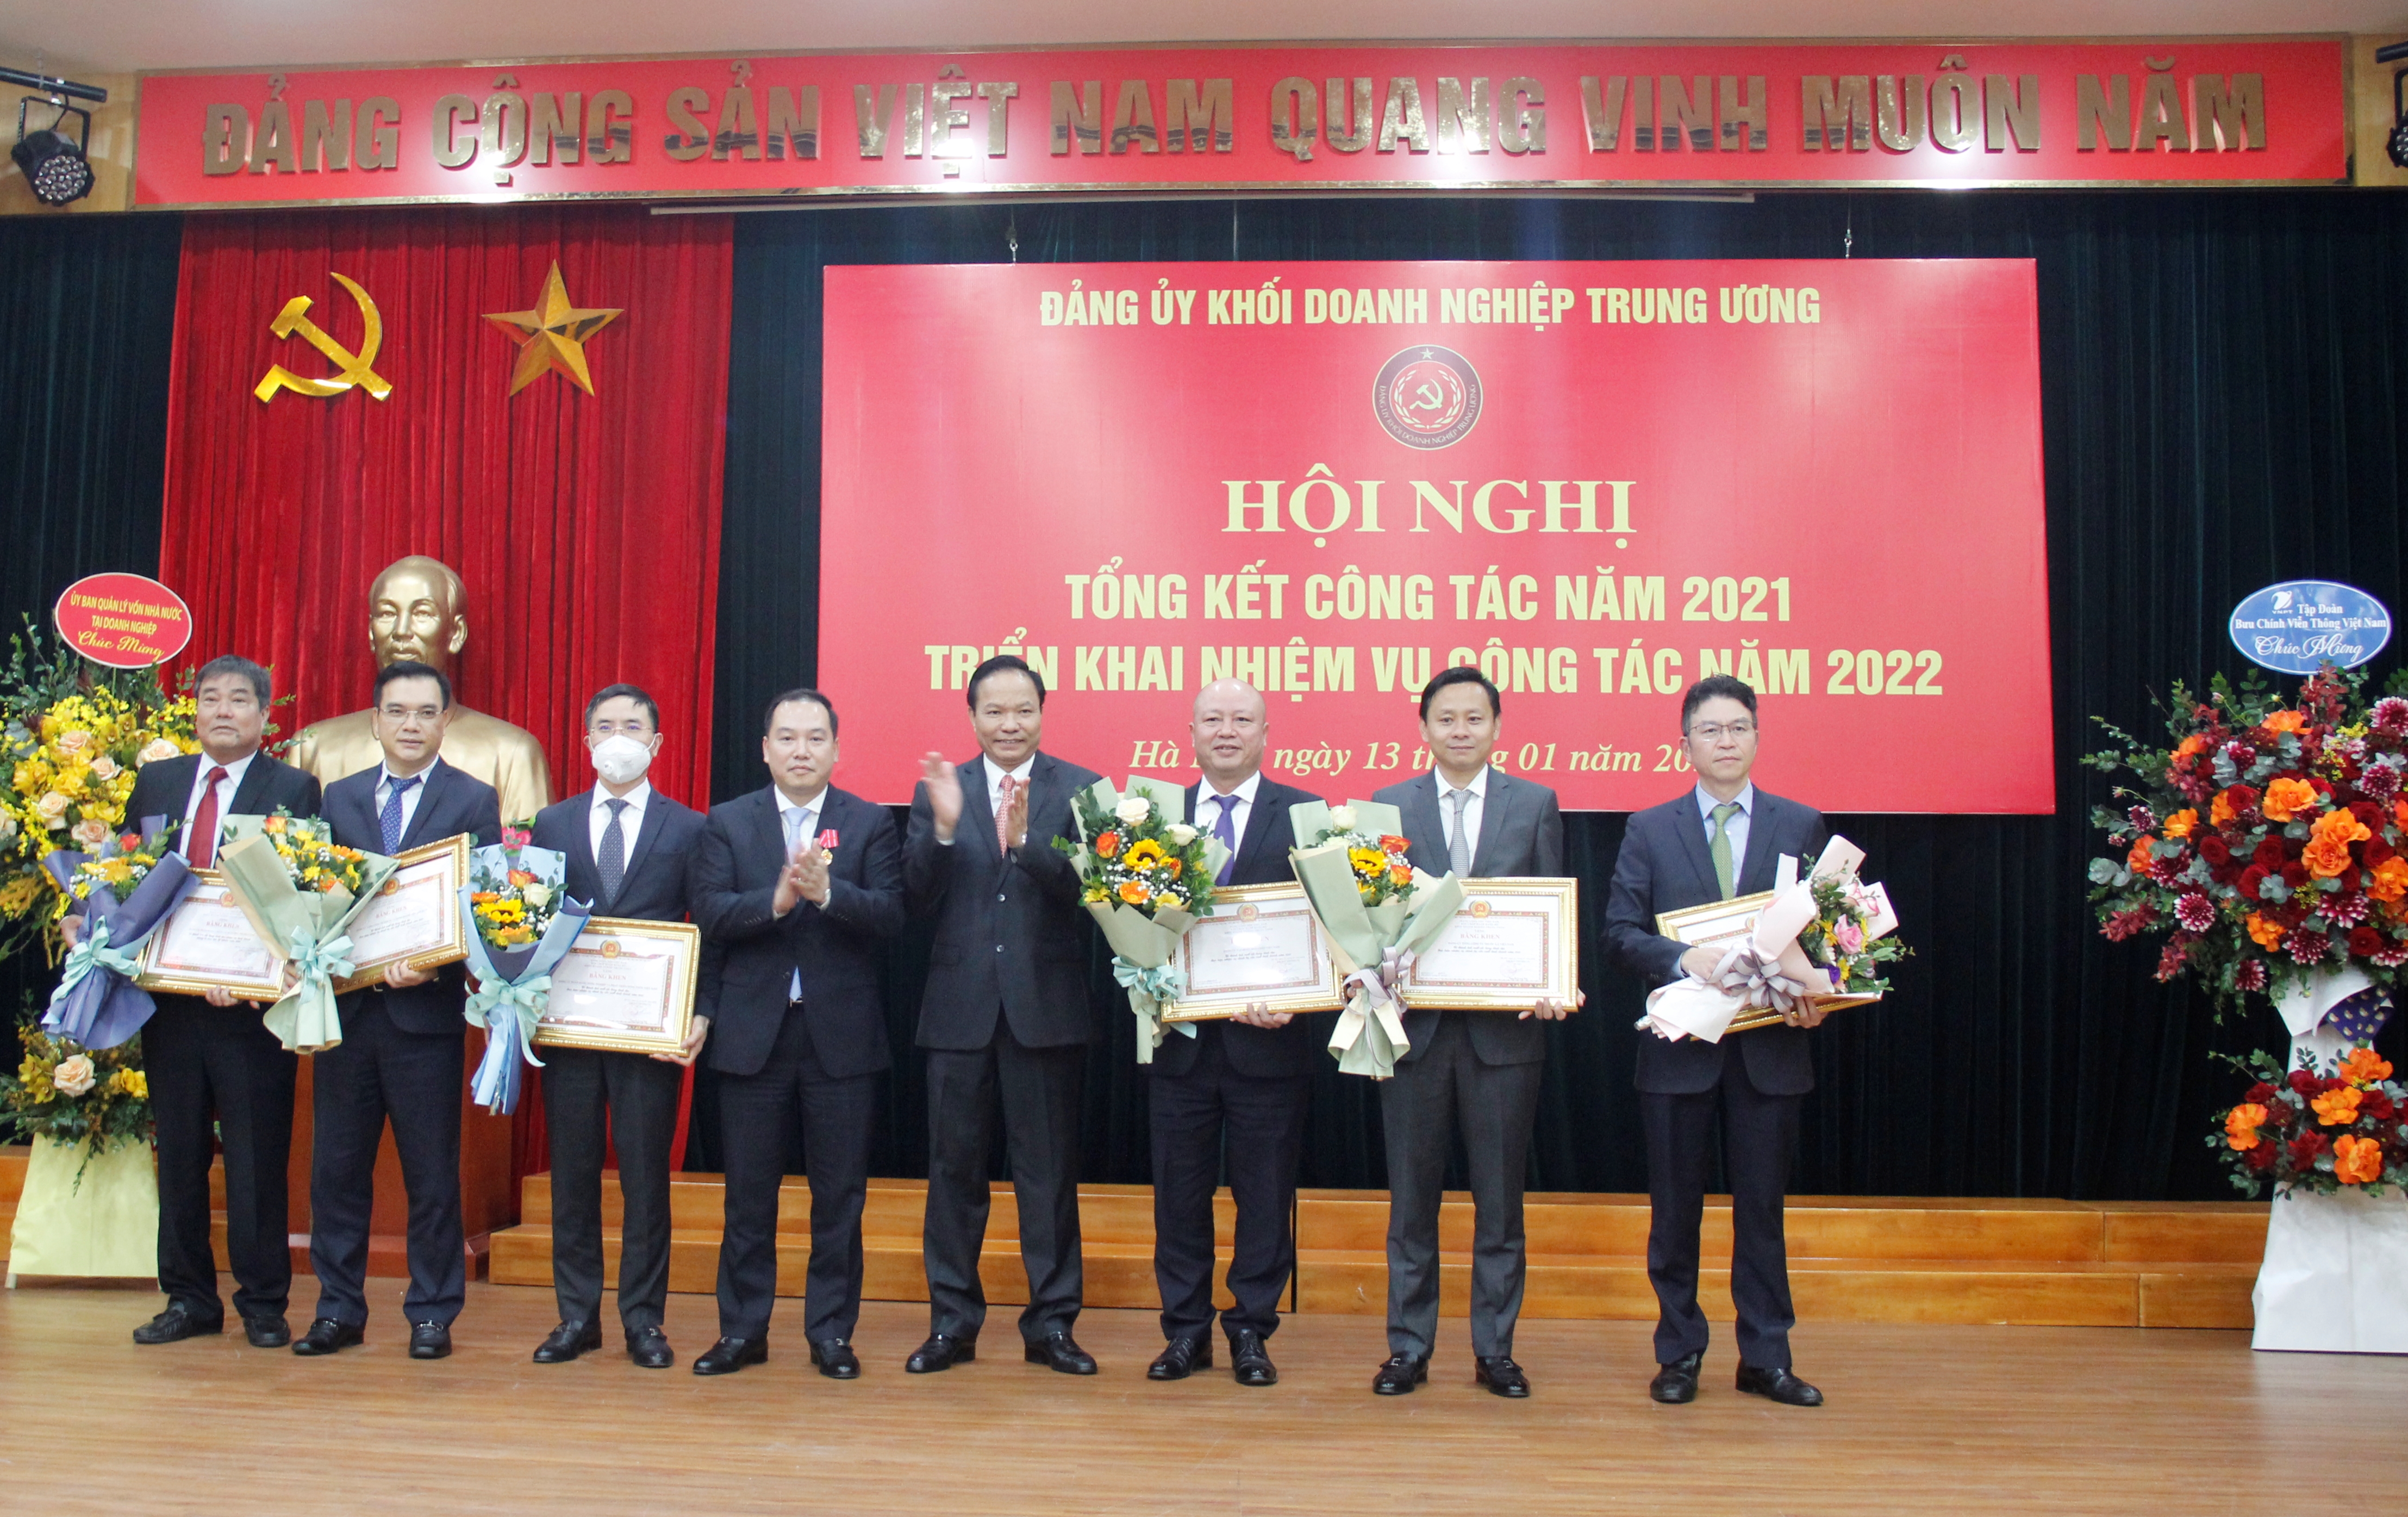 Đồng chí Lê Văn Châu và đồng chí Hồ Xuân Trường, Phó Bí thư Đảng uỷ Khối trao tặng Bằng khen cho 07 đảng ủy trực thuộc có thành tích xuất sắc trong lãnh đạo nhiệm vụ chính trị, sản xuất kinh doanh năm 2021.